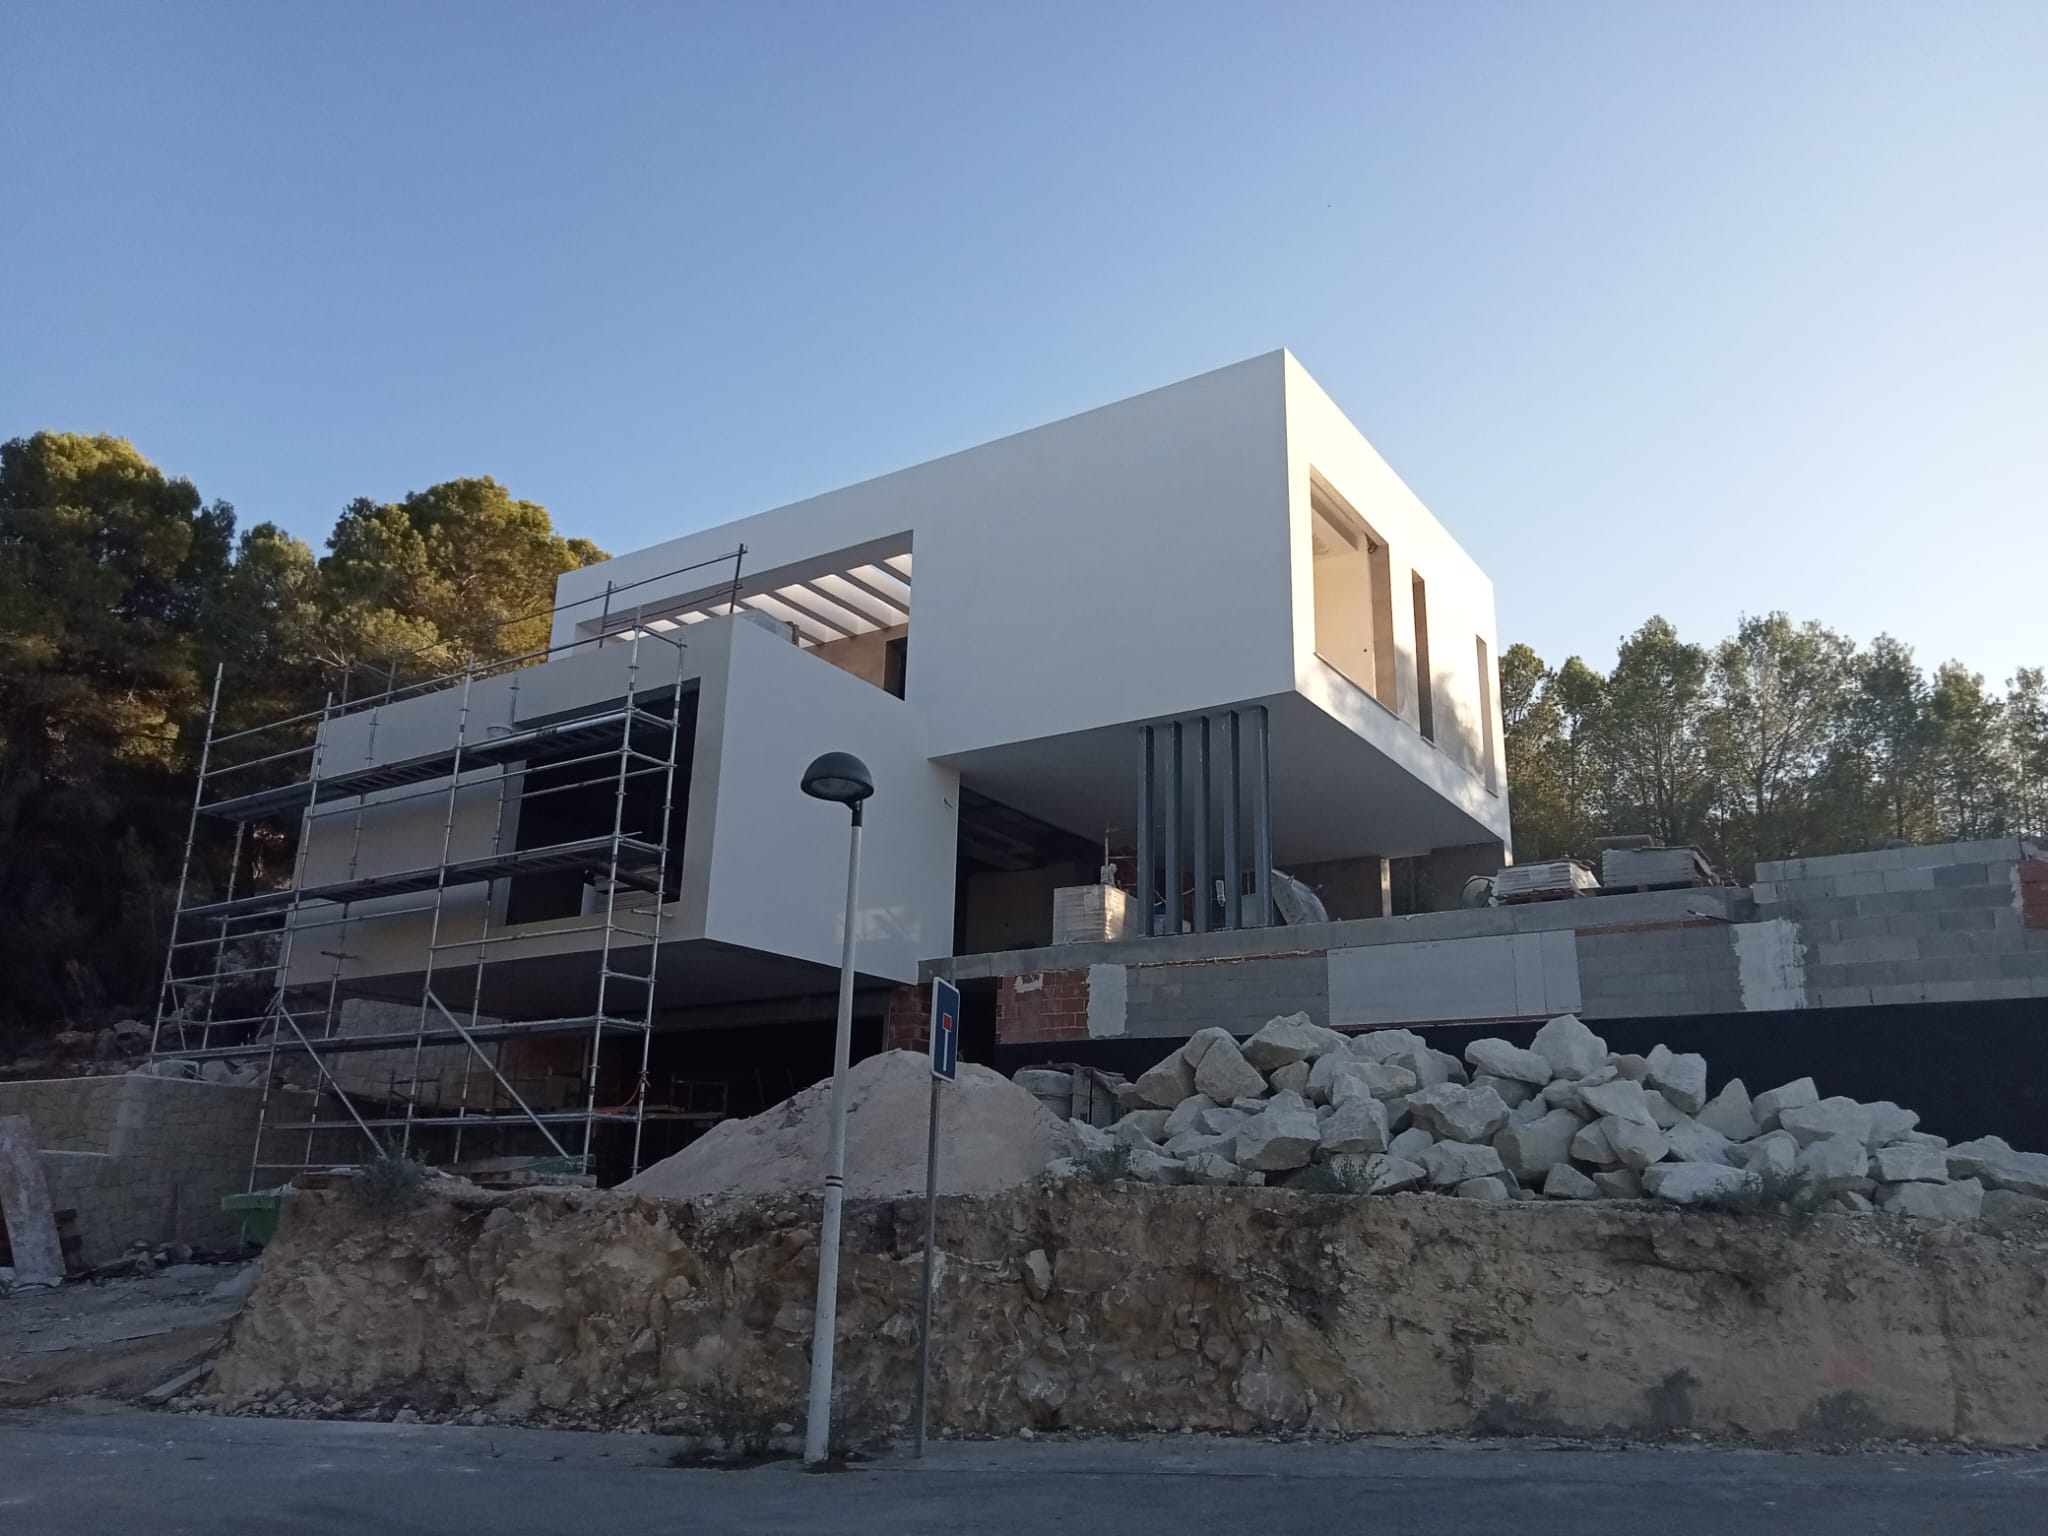 Espectacular villa de lujo de nueva construcción a la venta en Moraira